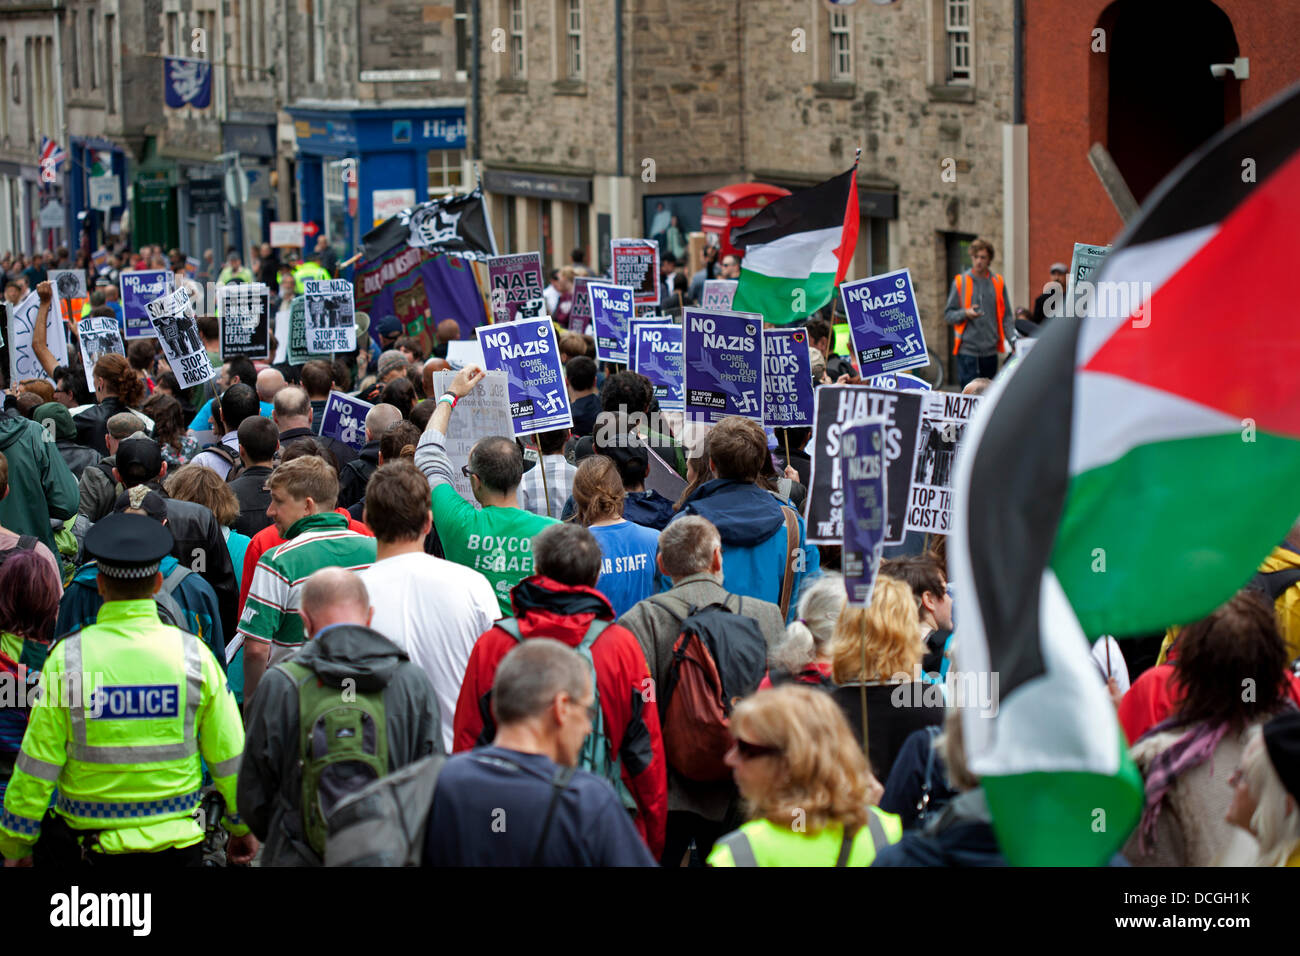 Édimbourg, Écosse 17 août 2013, mars contre des groupes racistes et fascistes apporte le trafic à l'arrêt dans le centre ville. Quelques rues, la Ligue de la Défense écossaise (SDL) mars au Parlement. Banque D'Images